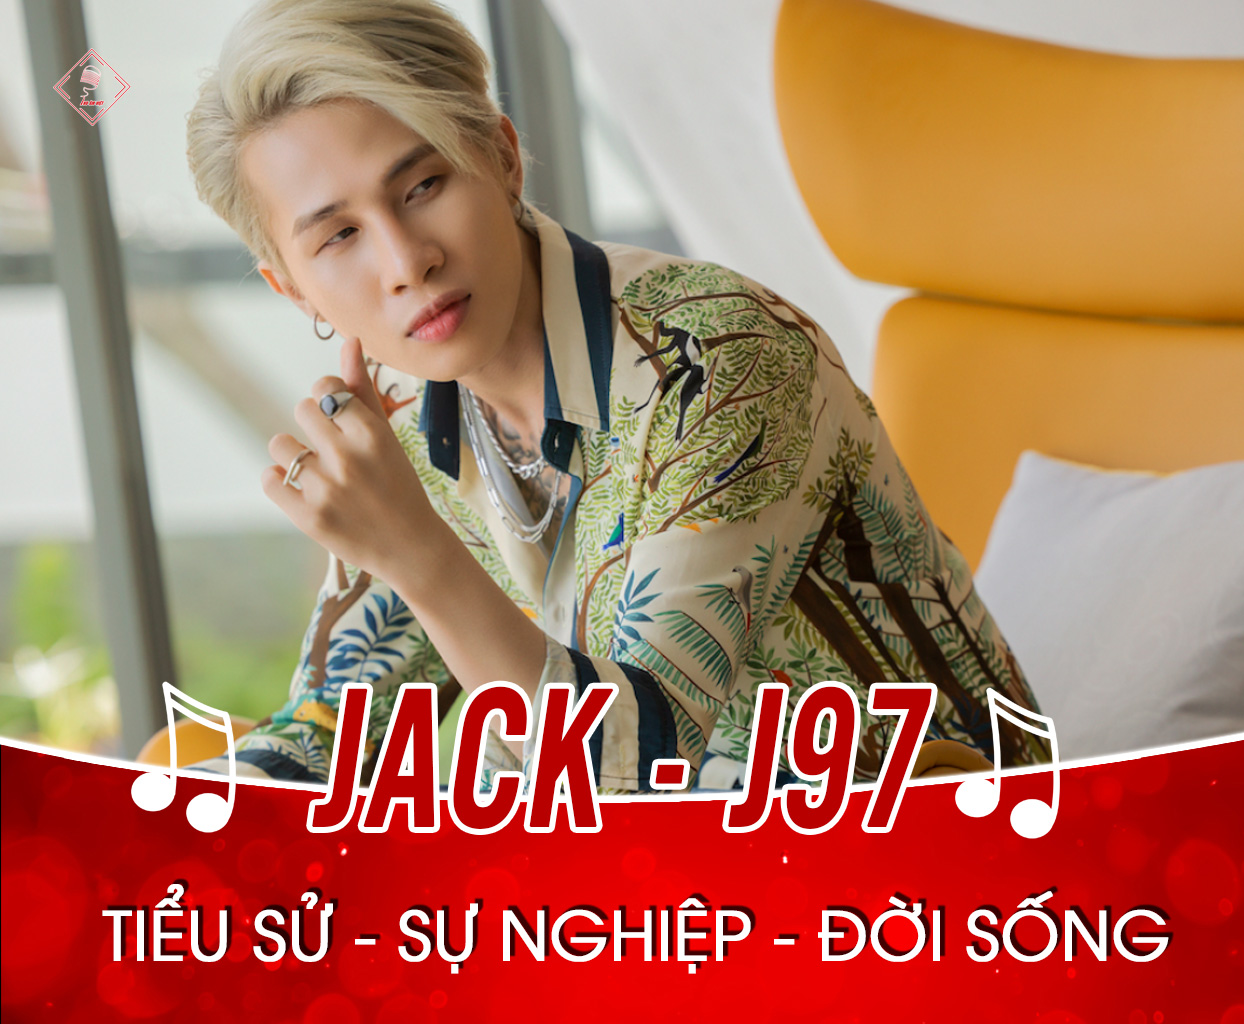 Thông tin tiểu sử ca sĩ Jack - J97 là ai? Sự nghiệp âm nhạc và cuộc sống đời thường